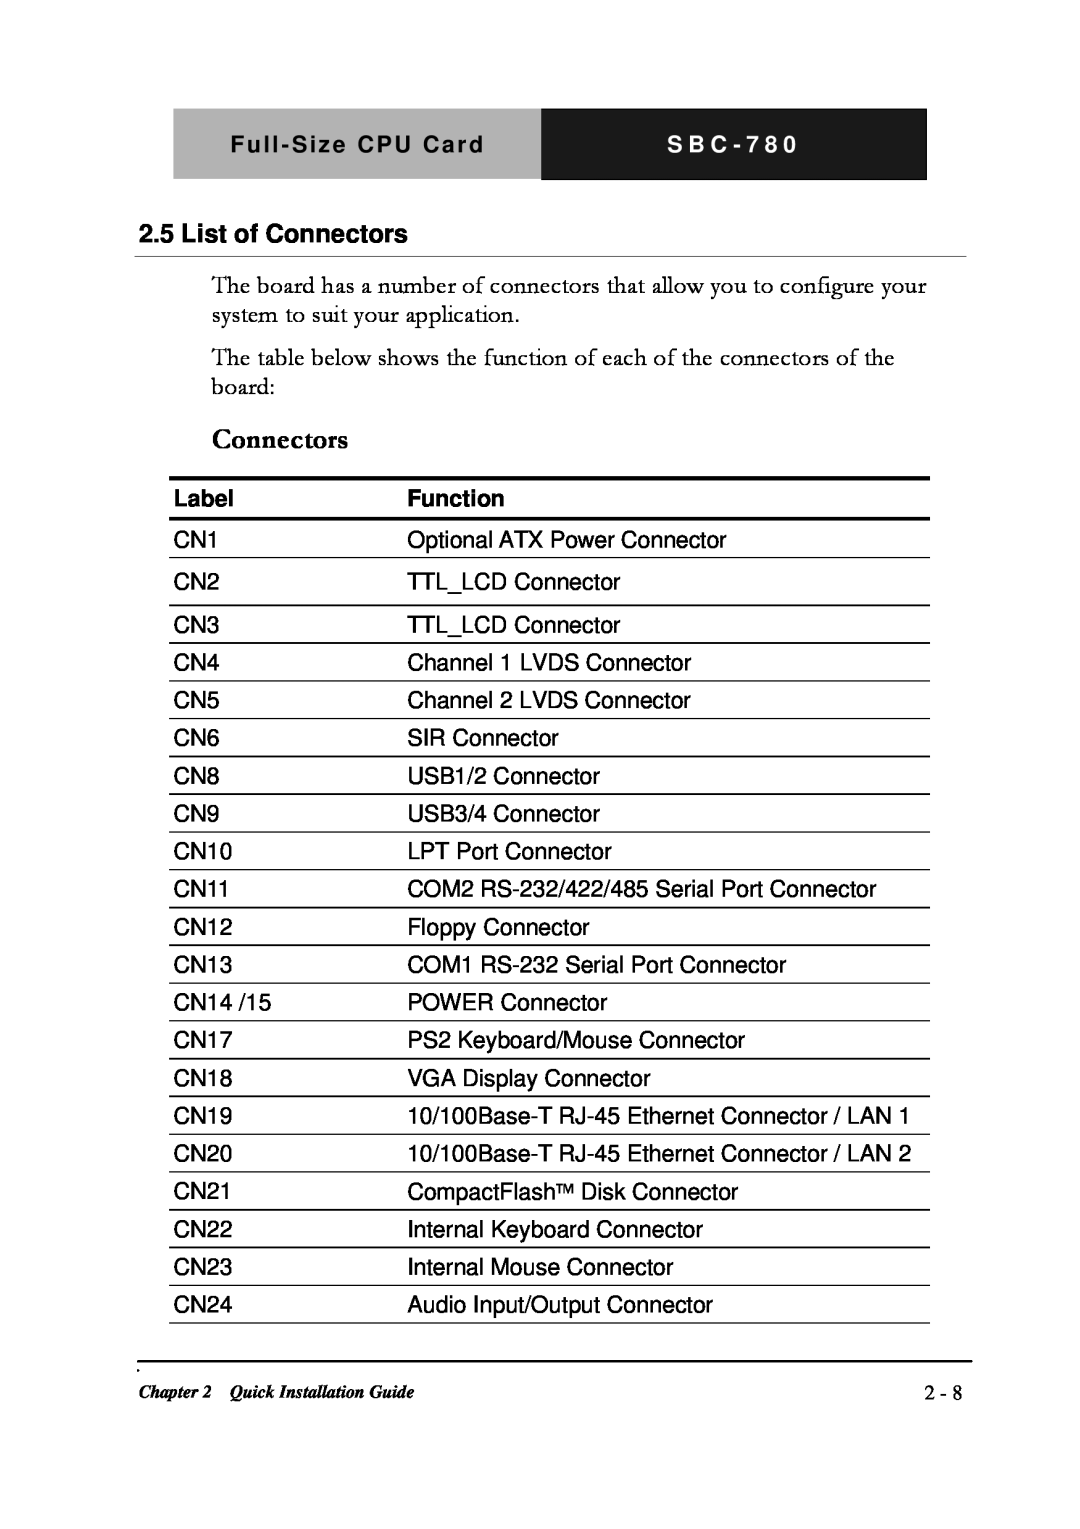 Intel SBC-780 manual List of Connectors 